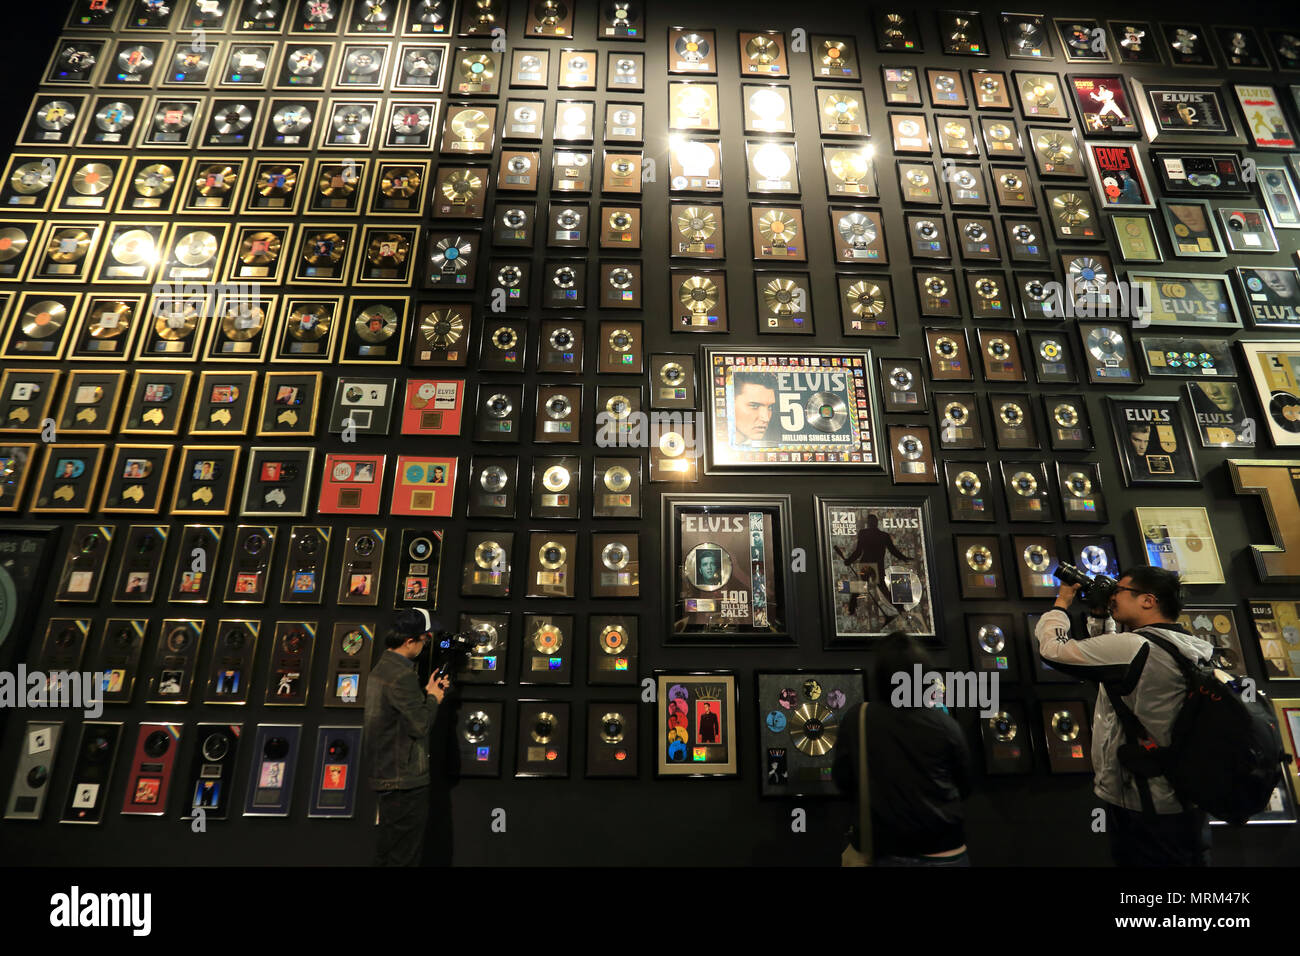 Collection de disques or et platine affichage à l'artiste Elvis Graceland en musée carrière la maison d'Elvis Presley.Memphis.Montana.USA Banque D'Images